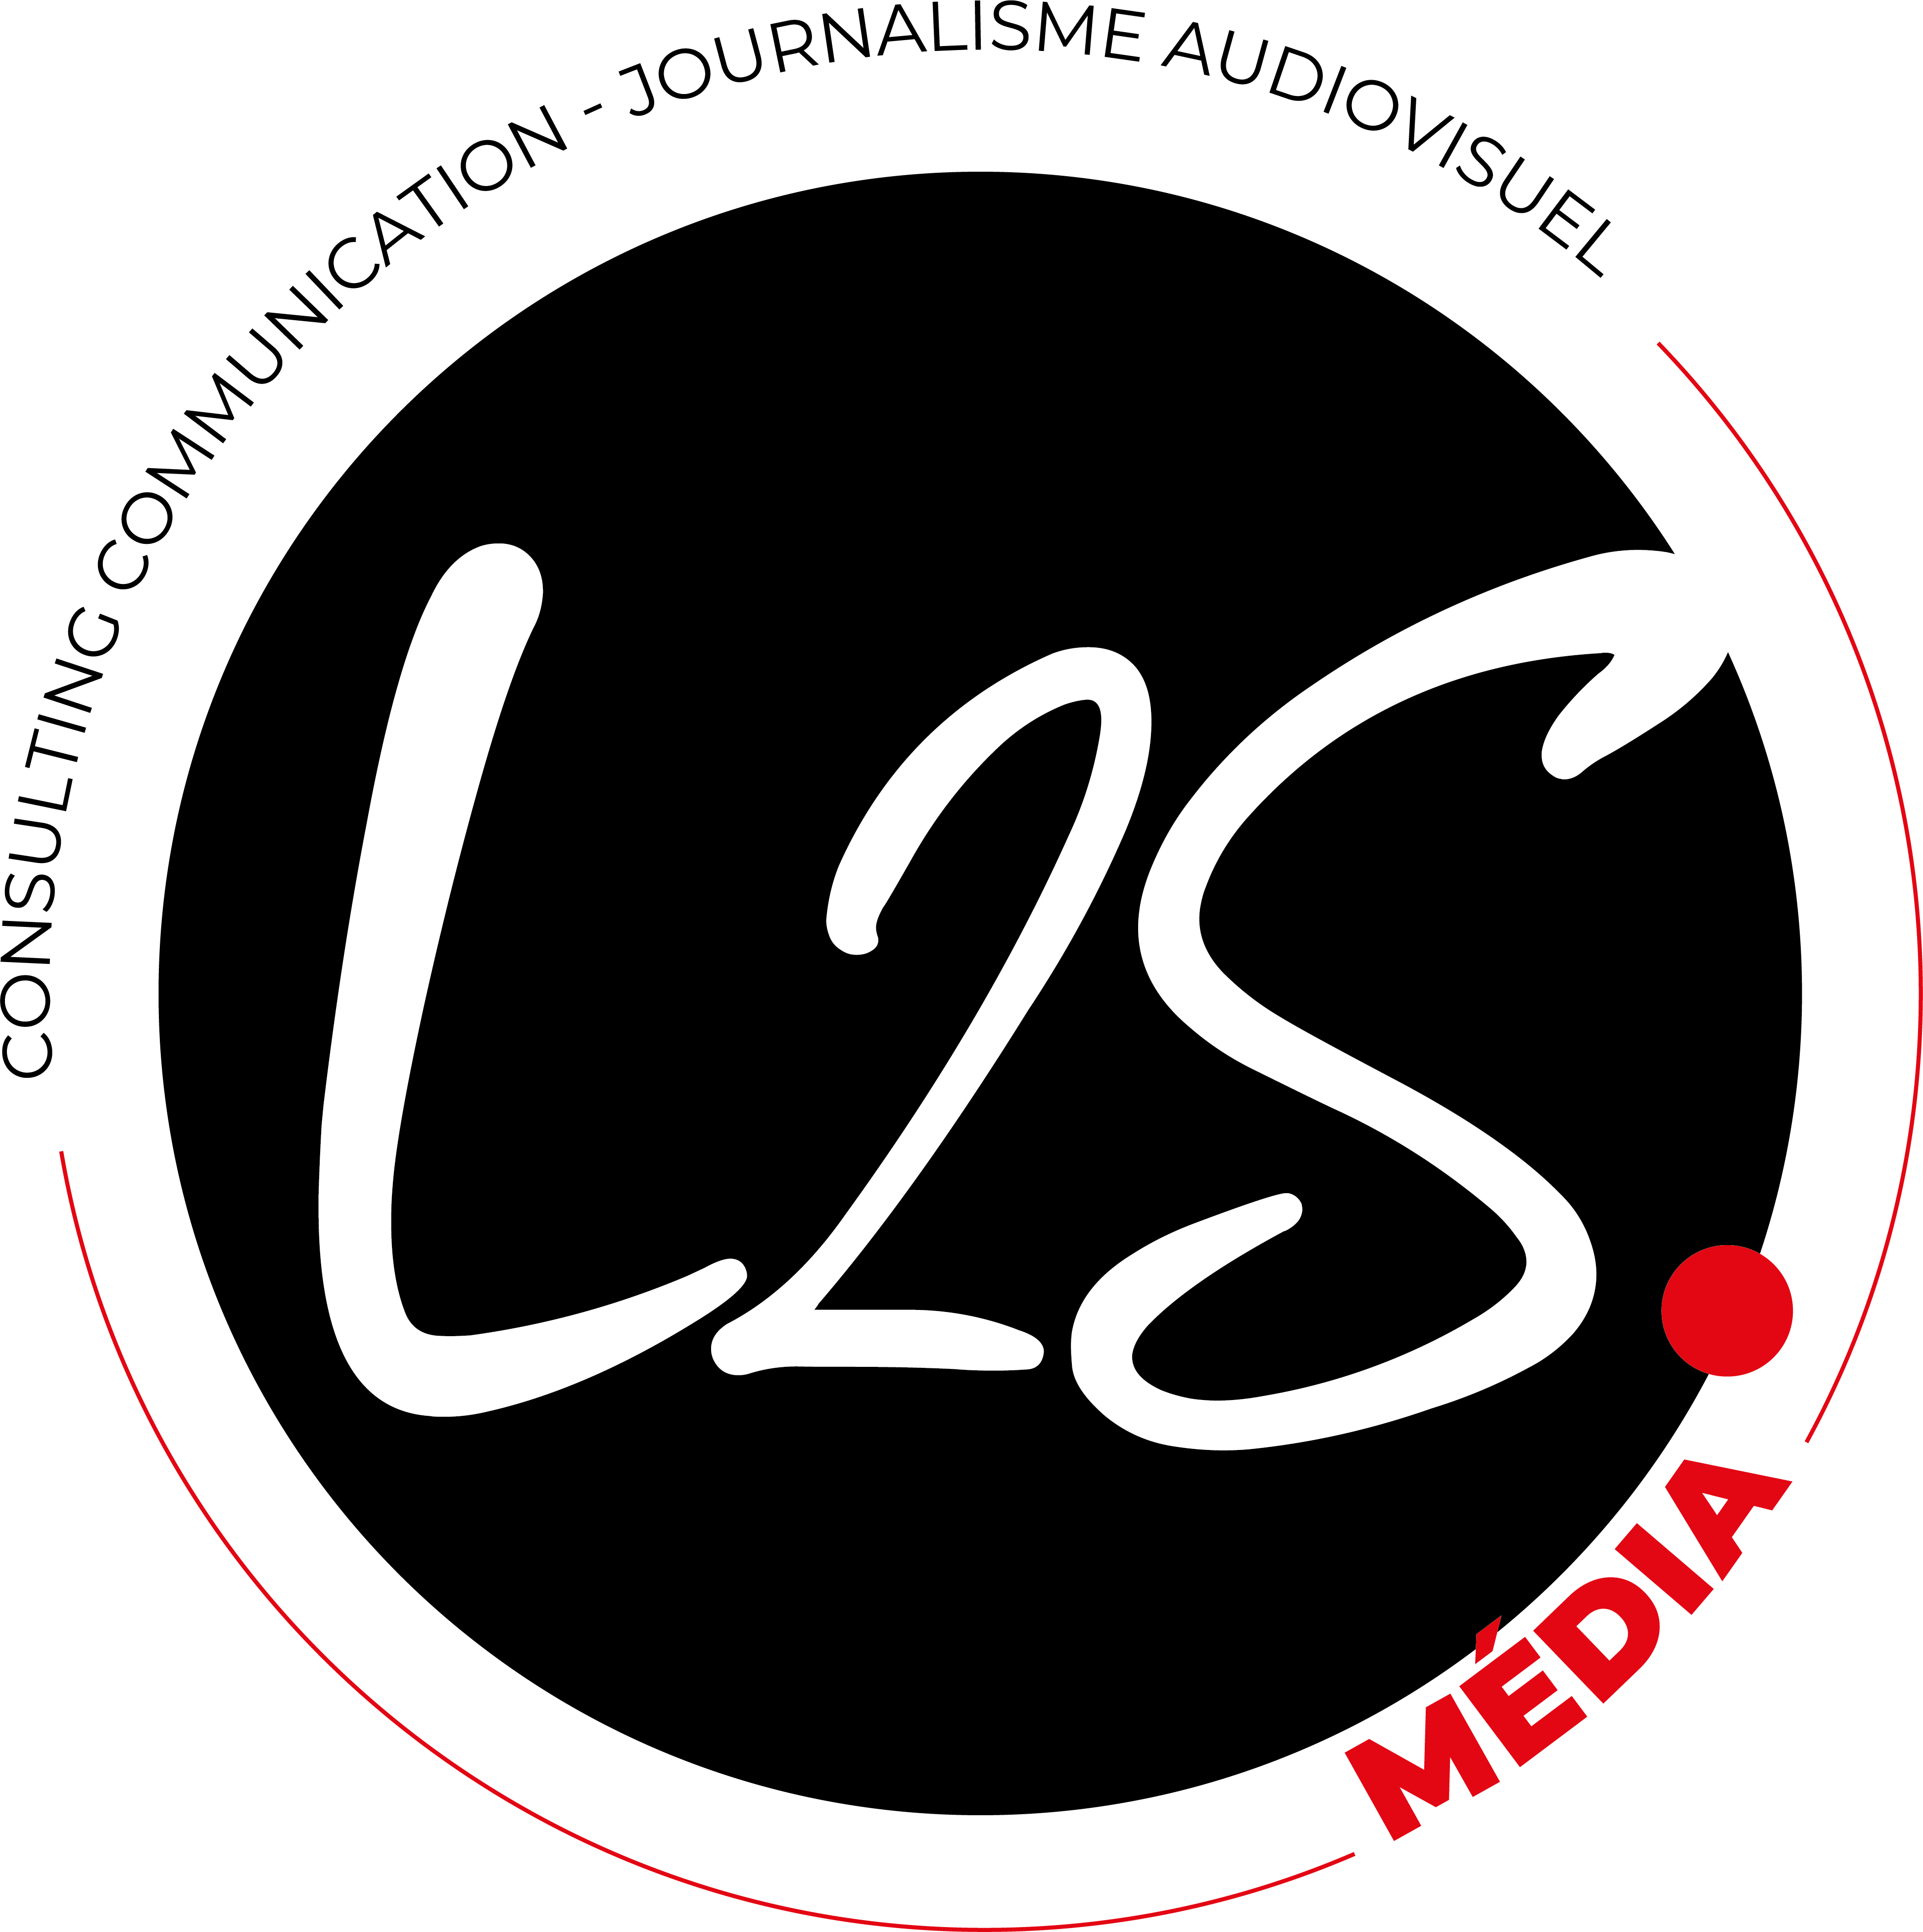 logo rond rouge et noir intitulé "l2s média"